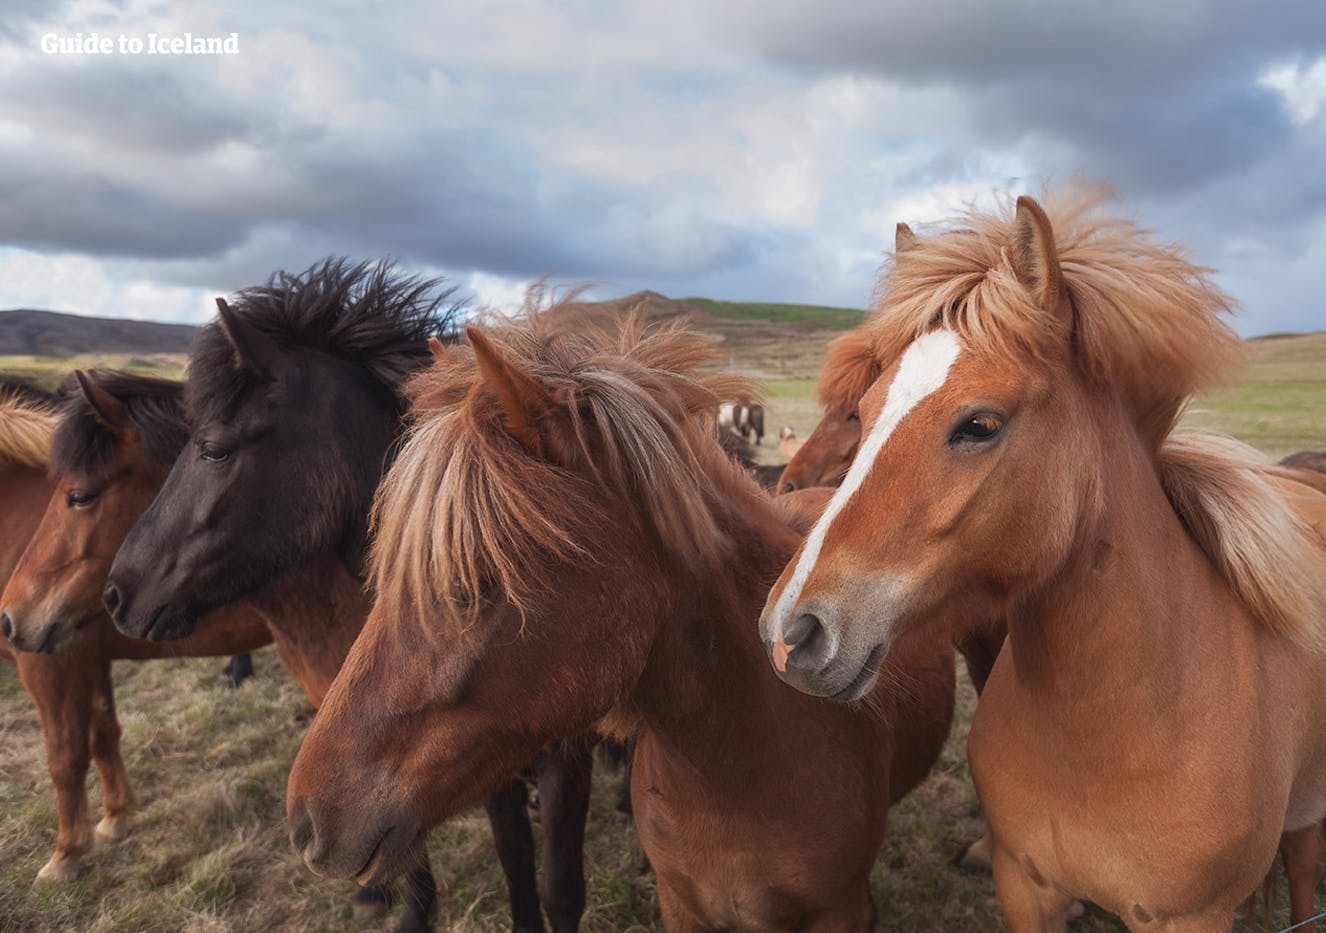 Potresti avvistare alcuni cavalli islandesi al pascolo durante il tour self-drive